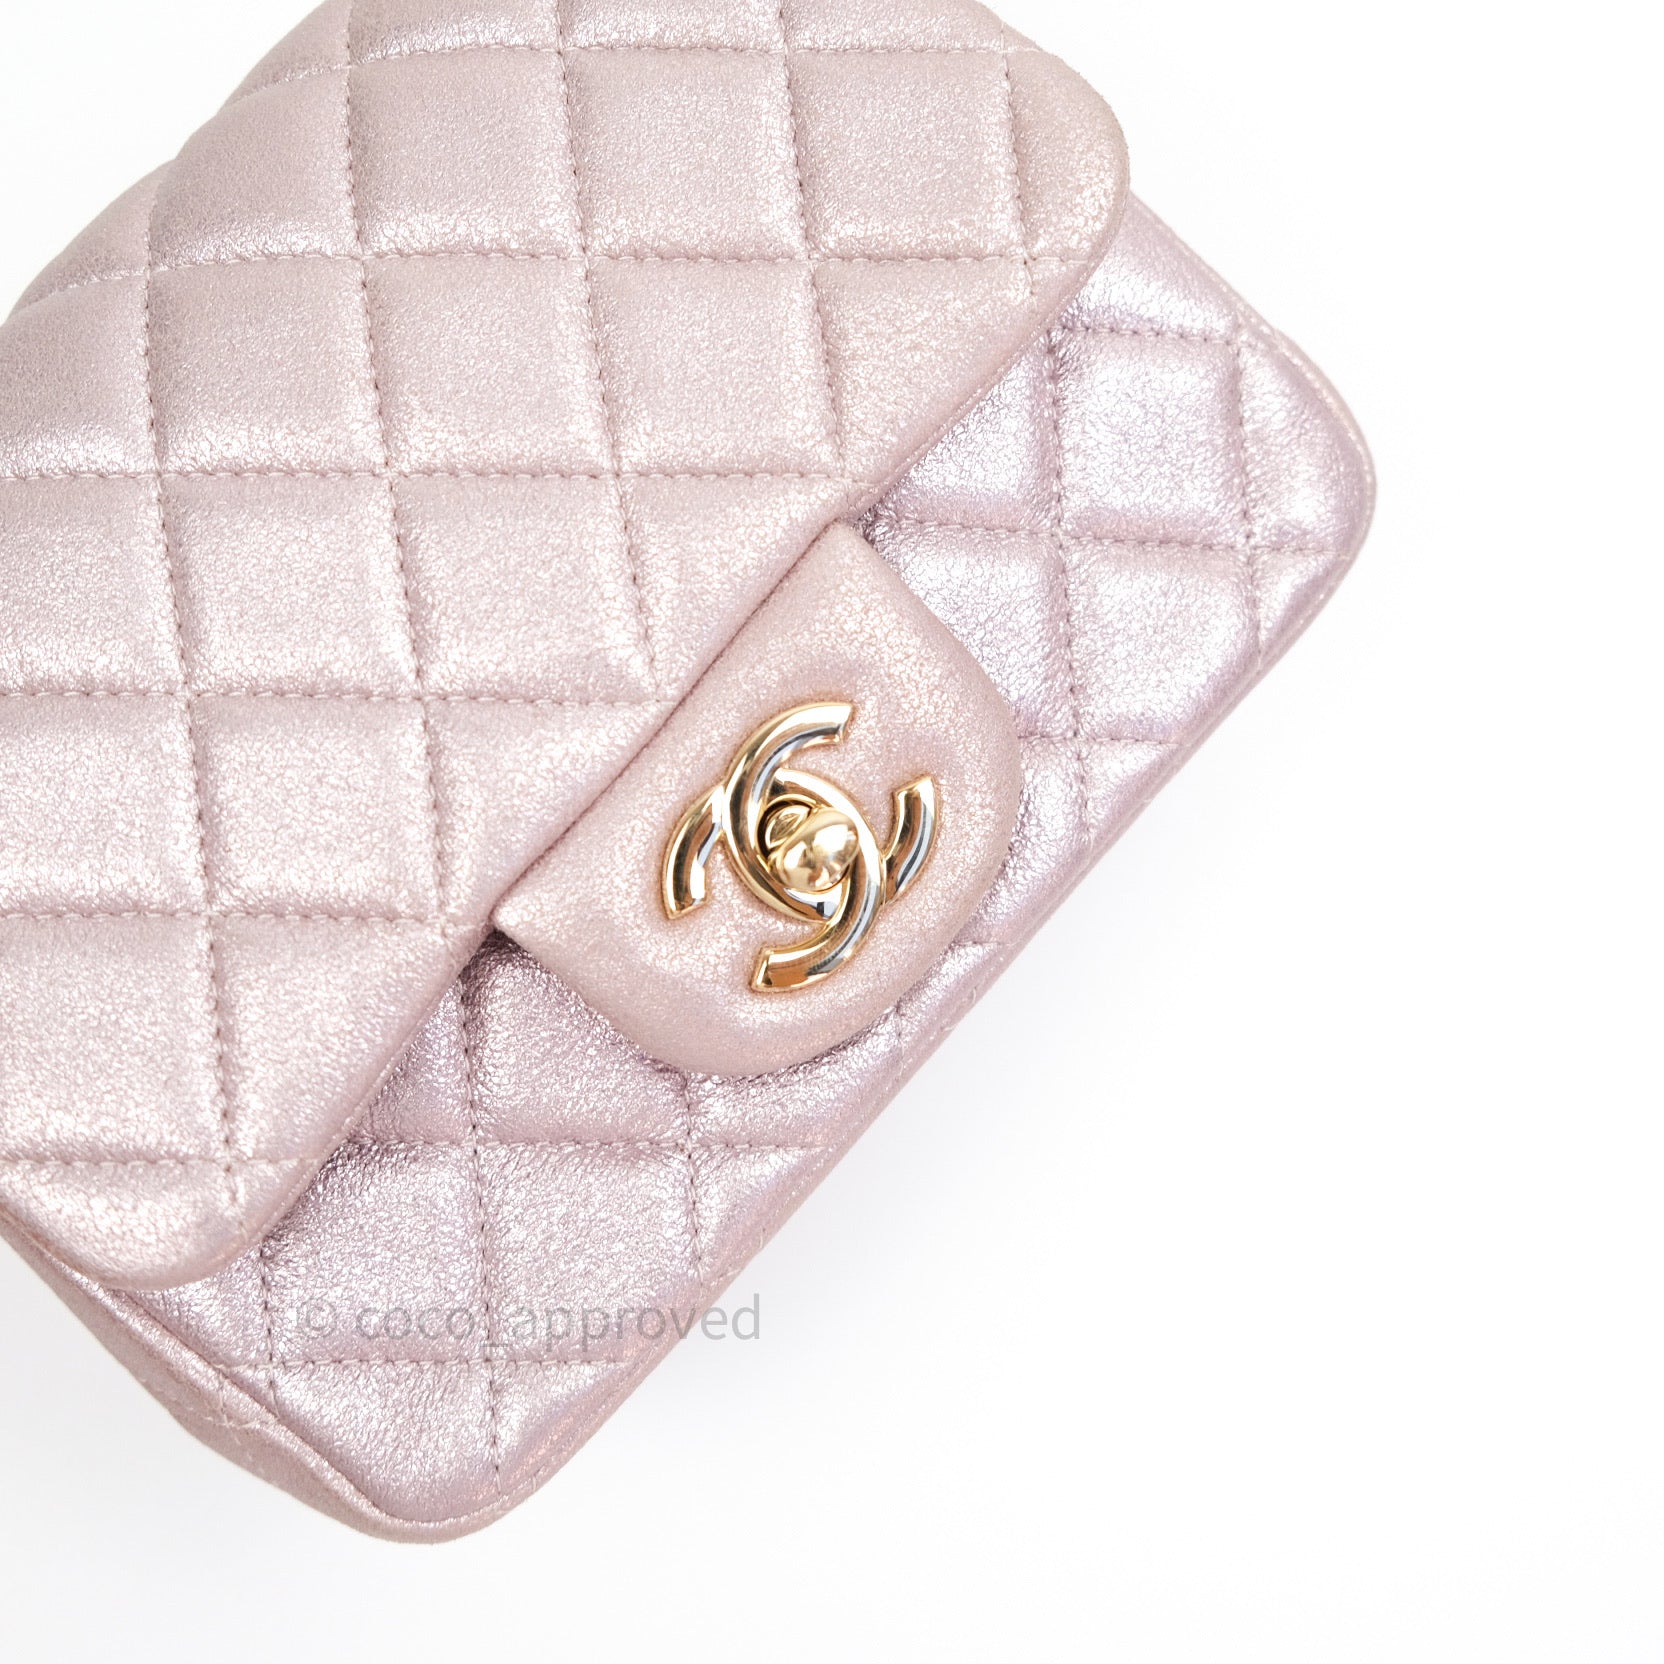 chanel small ring makeup bag : r/FashionReproduction